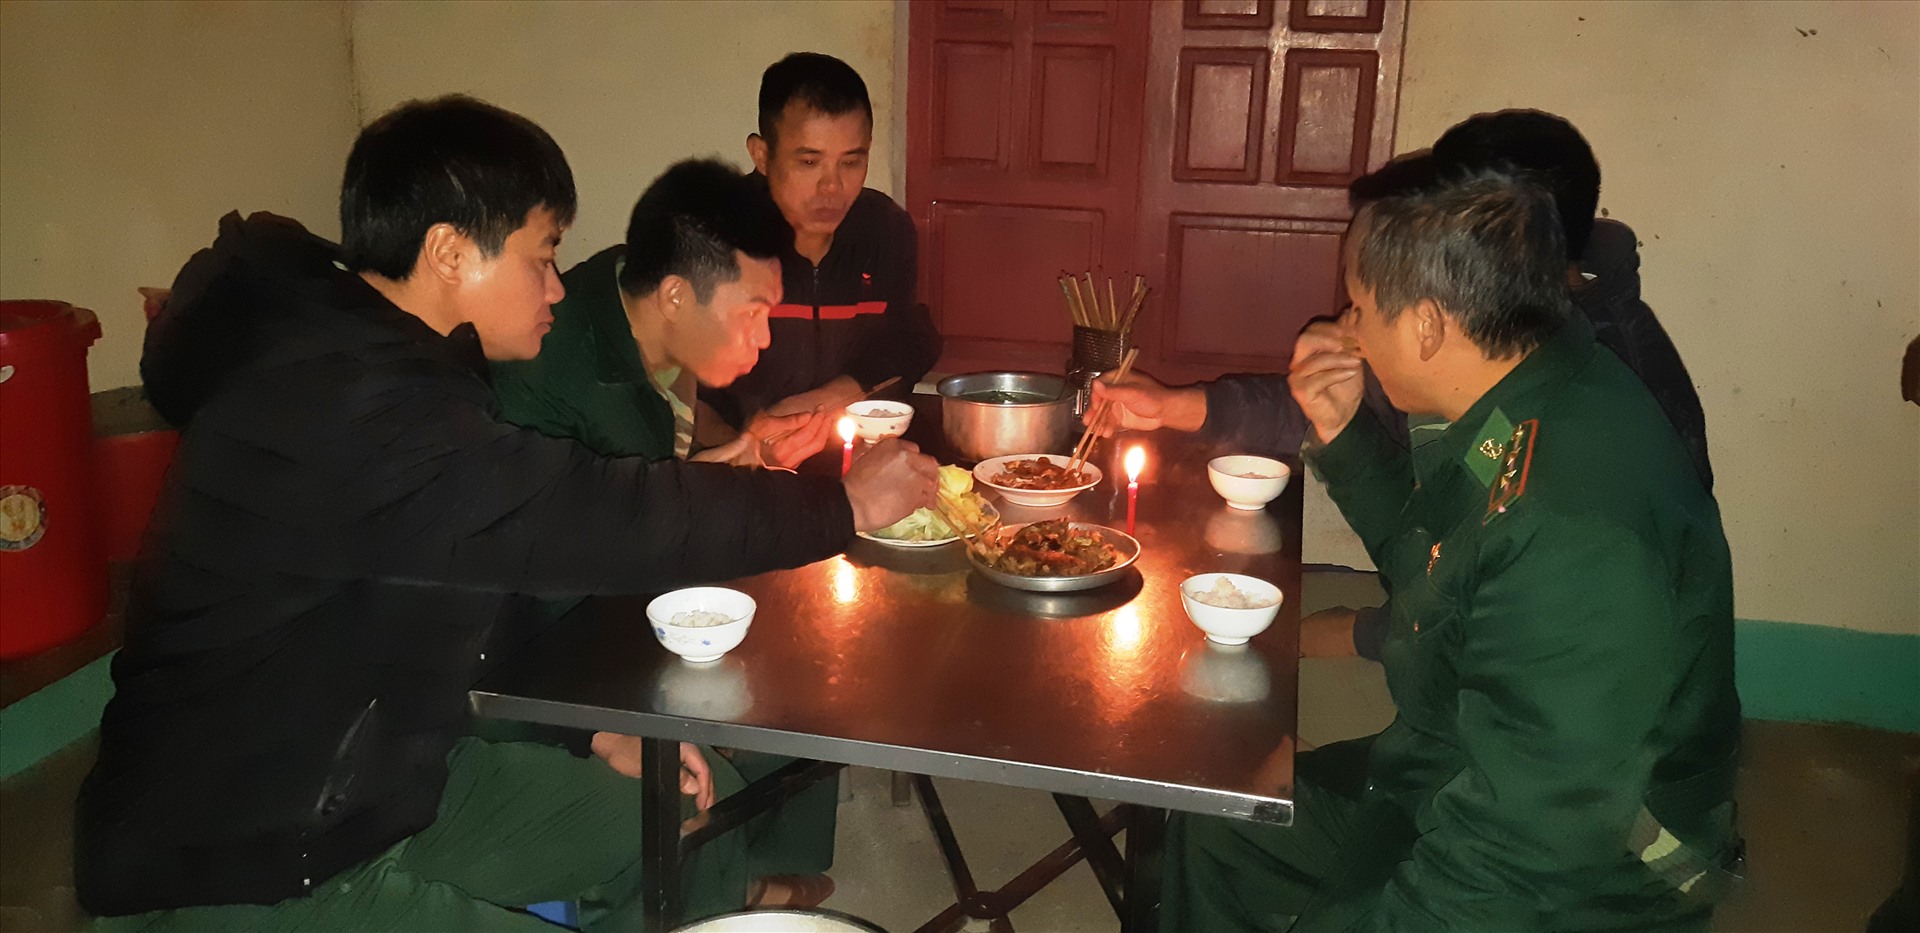 Bữa cơm trưa đơn giản của các chiến sĩ trạm Biên phòng Buộc Mú bên ánh nến lập lòe. Ảnh: Trần Tuyên